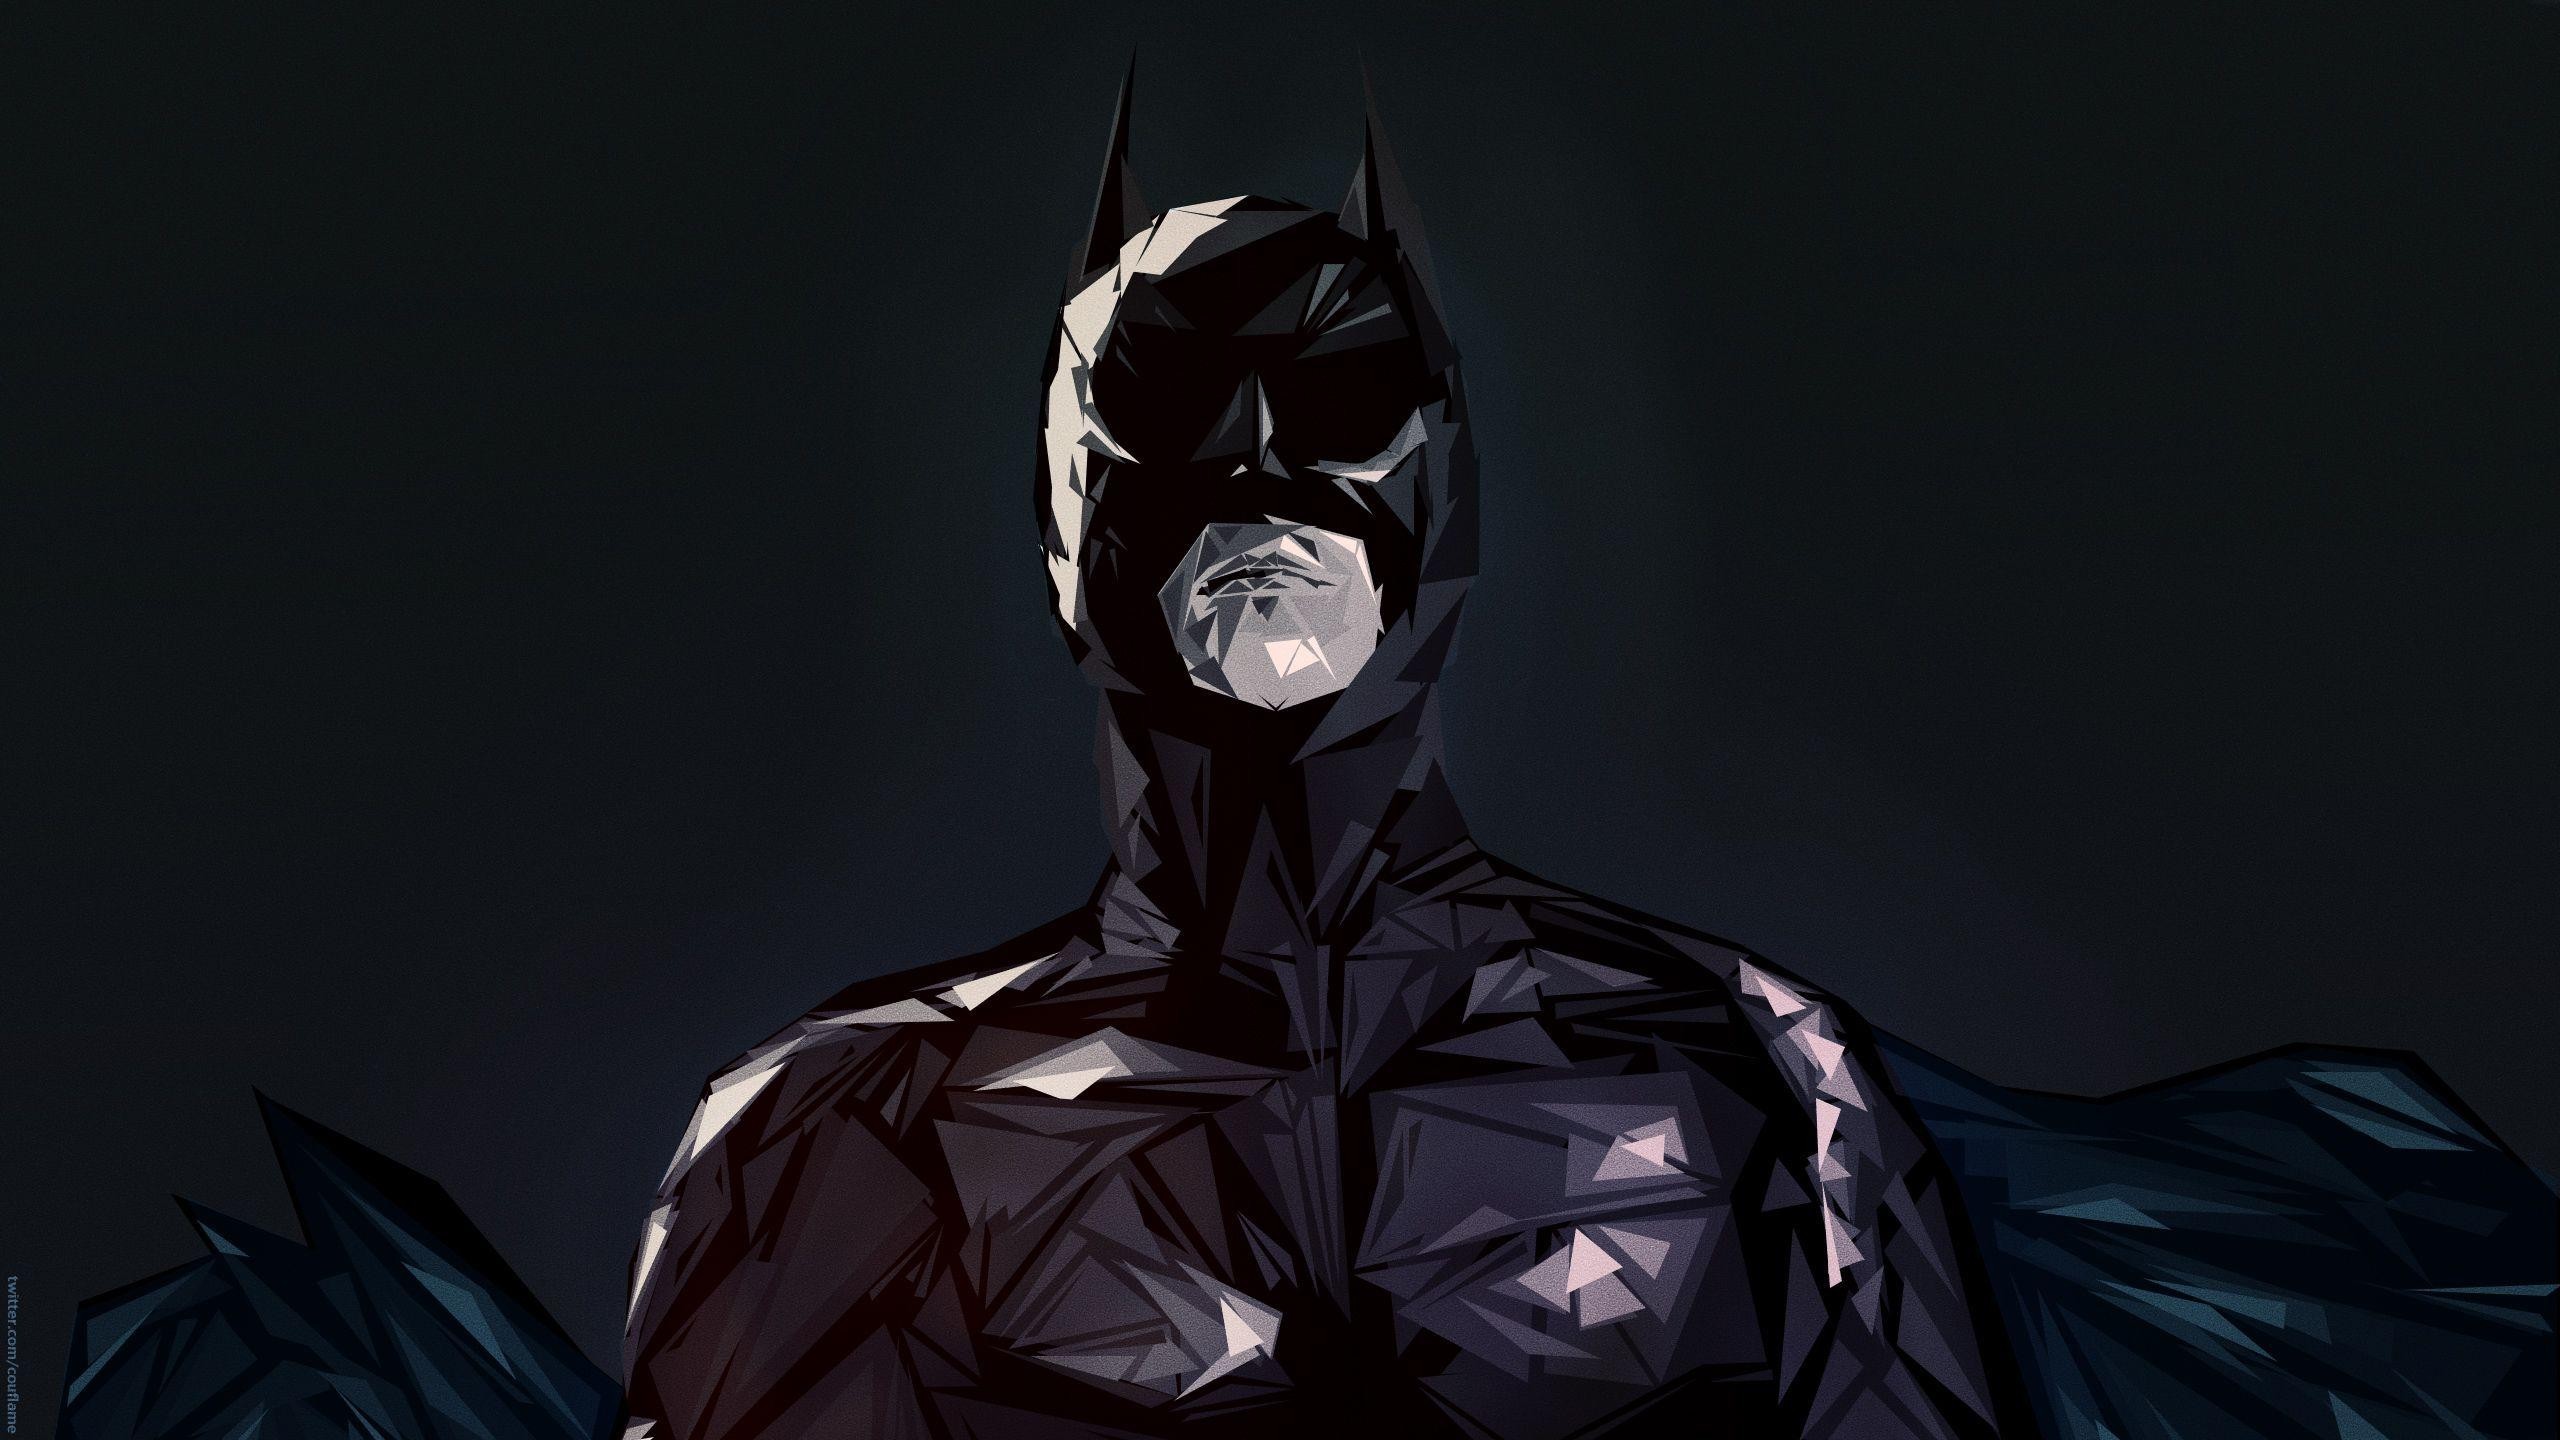 2560x1440 Supervillain, Robin, Fictional Character, Batman, Harley Quinn Wallpaper in   Resolution